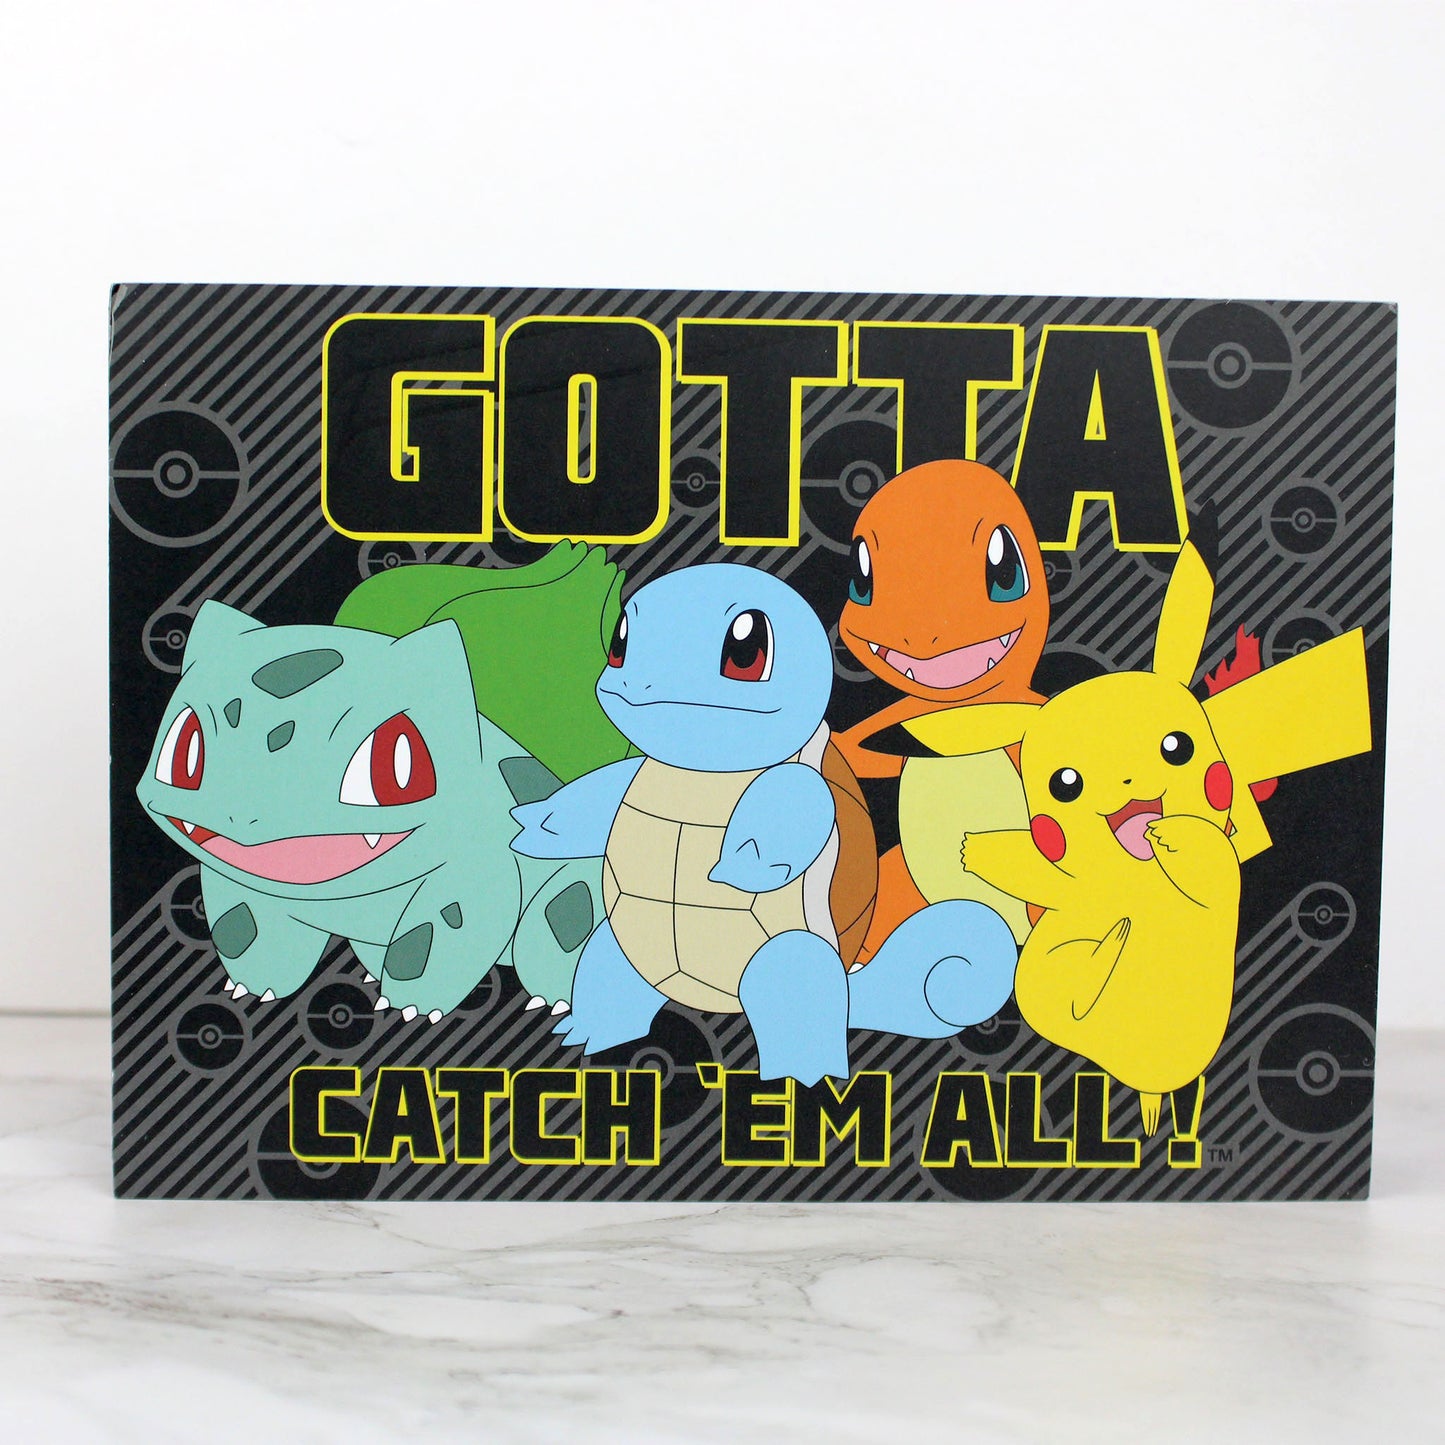 Pokémon: Gotta Catch 'Em All!